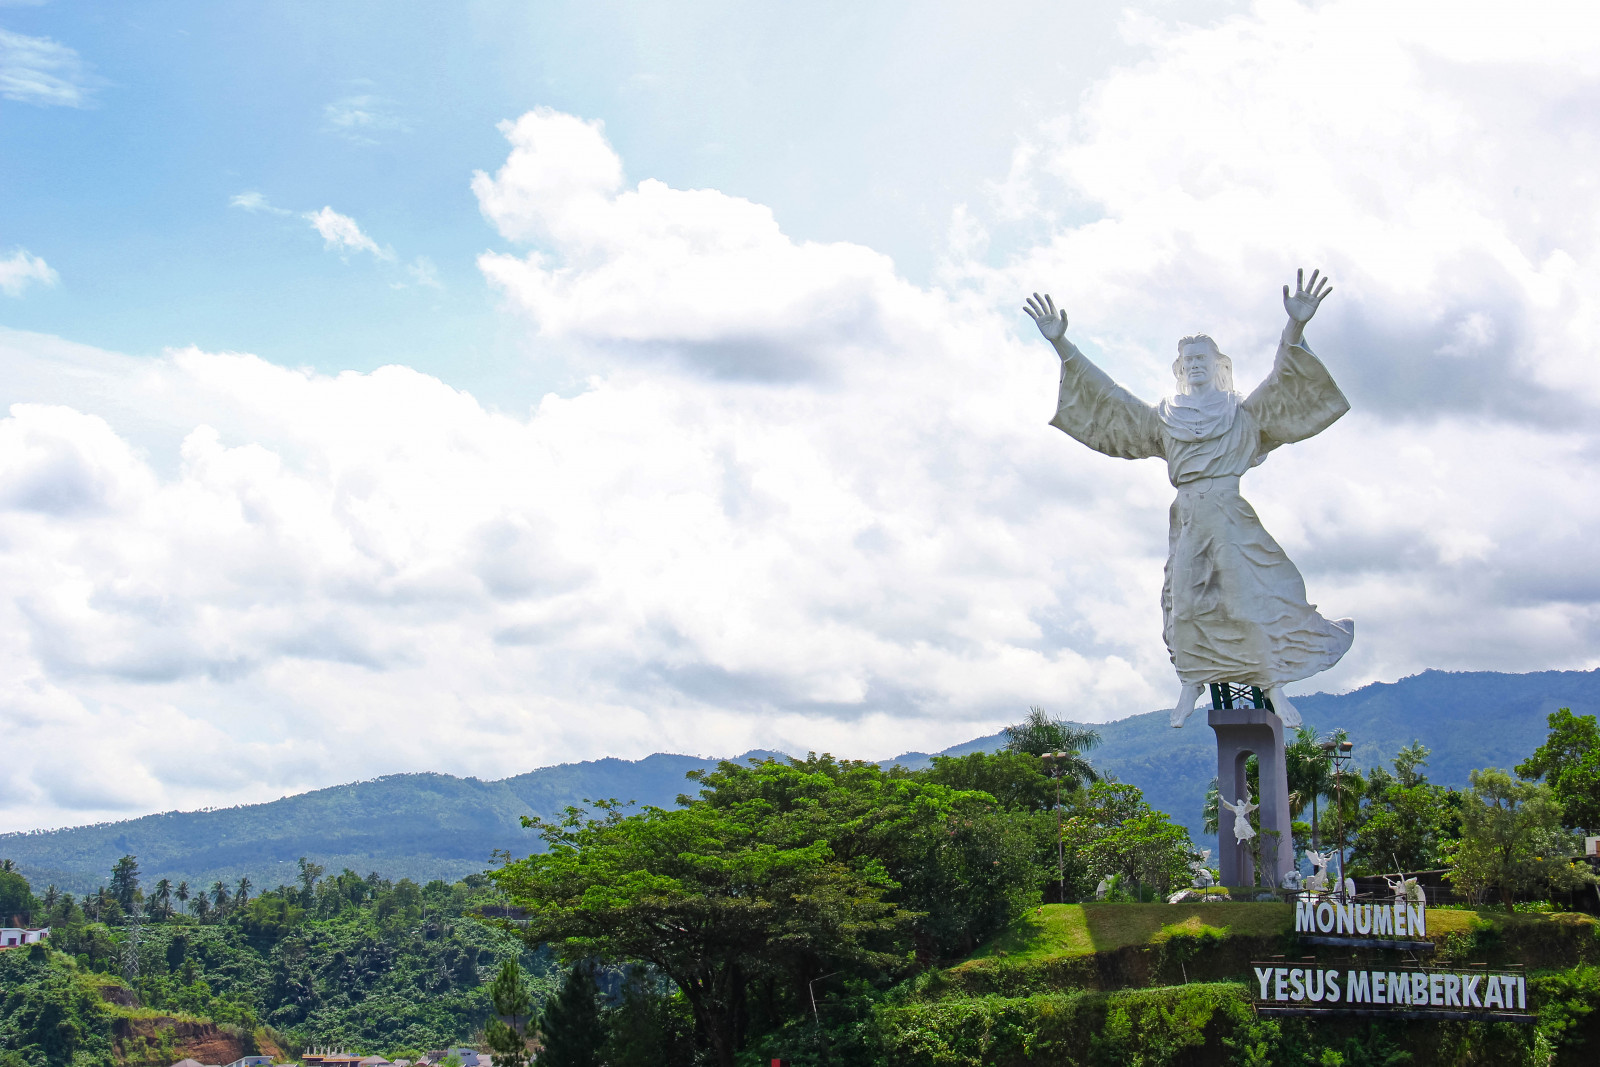 jesus christ blessing statue, patung Tuhan Yesus memberkati, manado, sulawesi selatan, Toraja